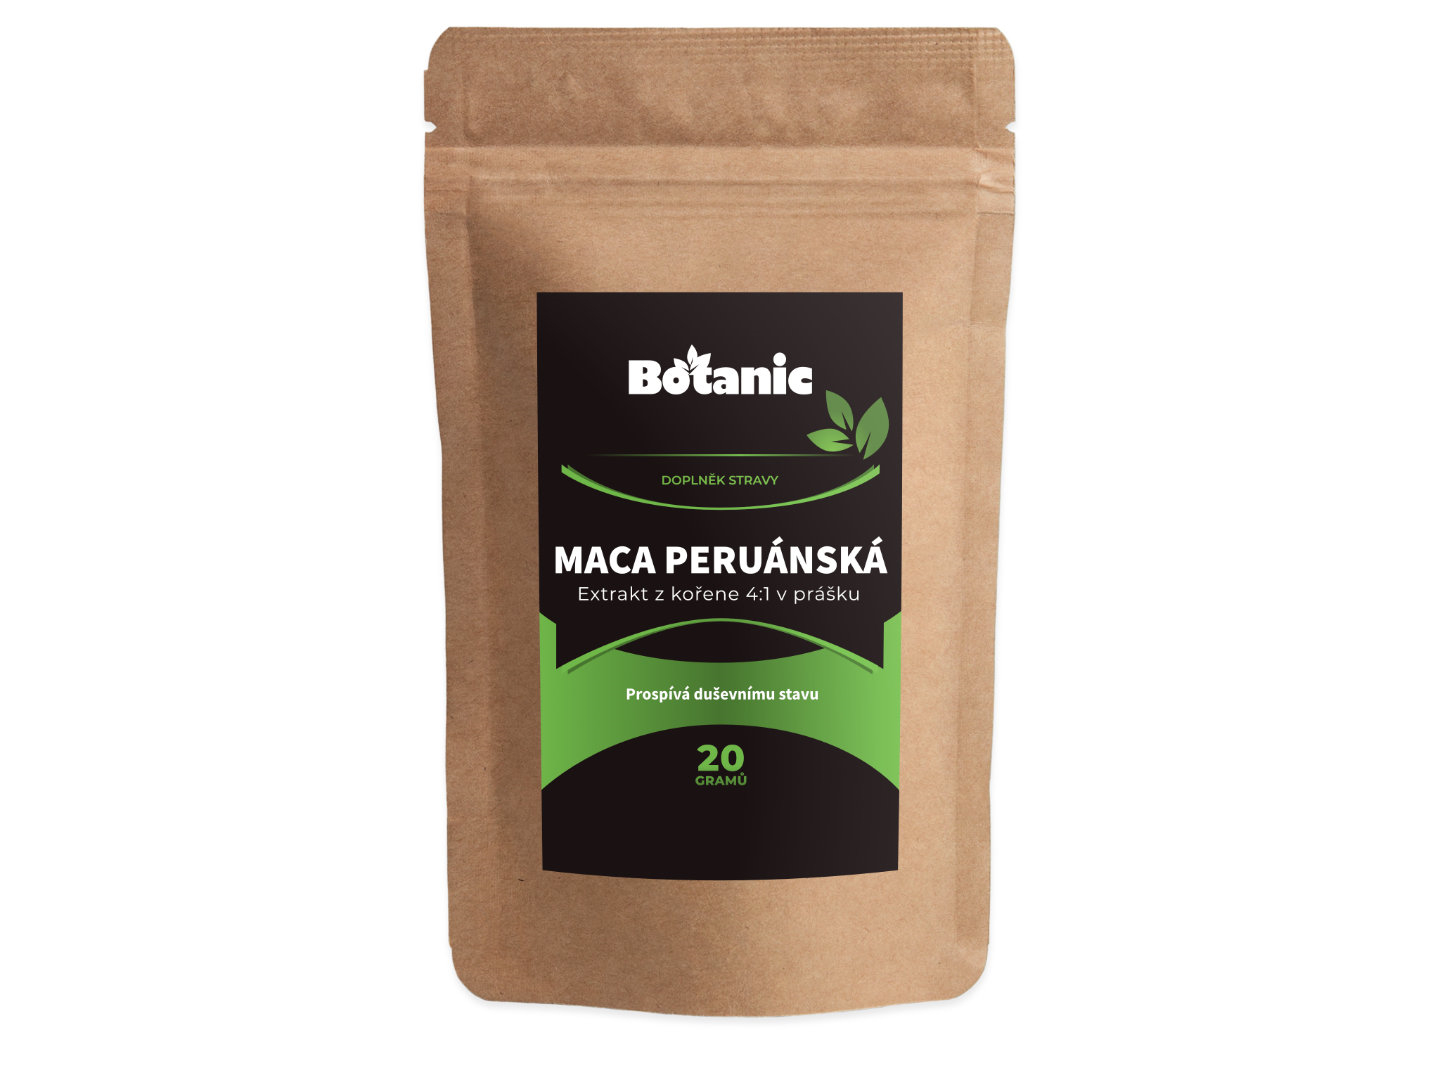 Botanic Maca peruánská - Extrakt z kořene 4:1 v prášku 20g